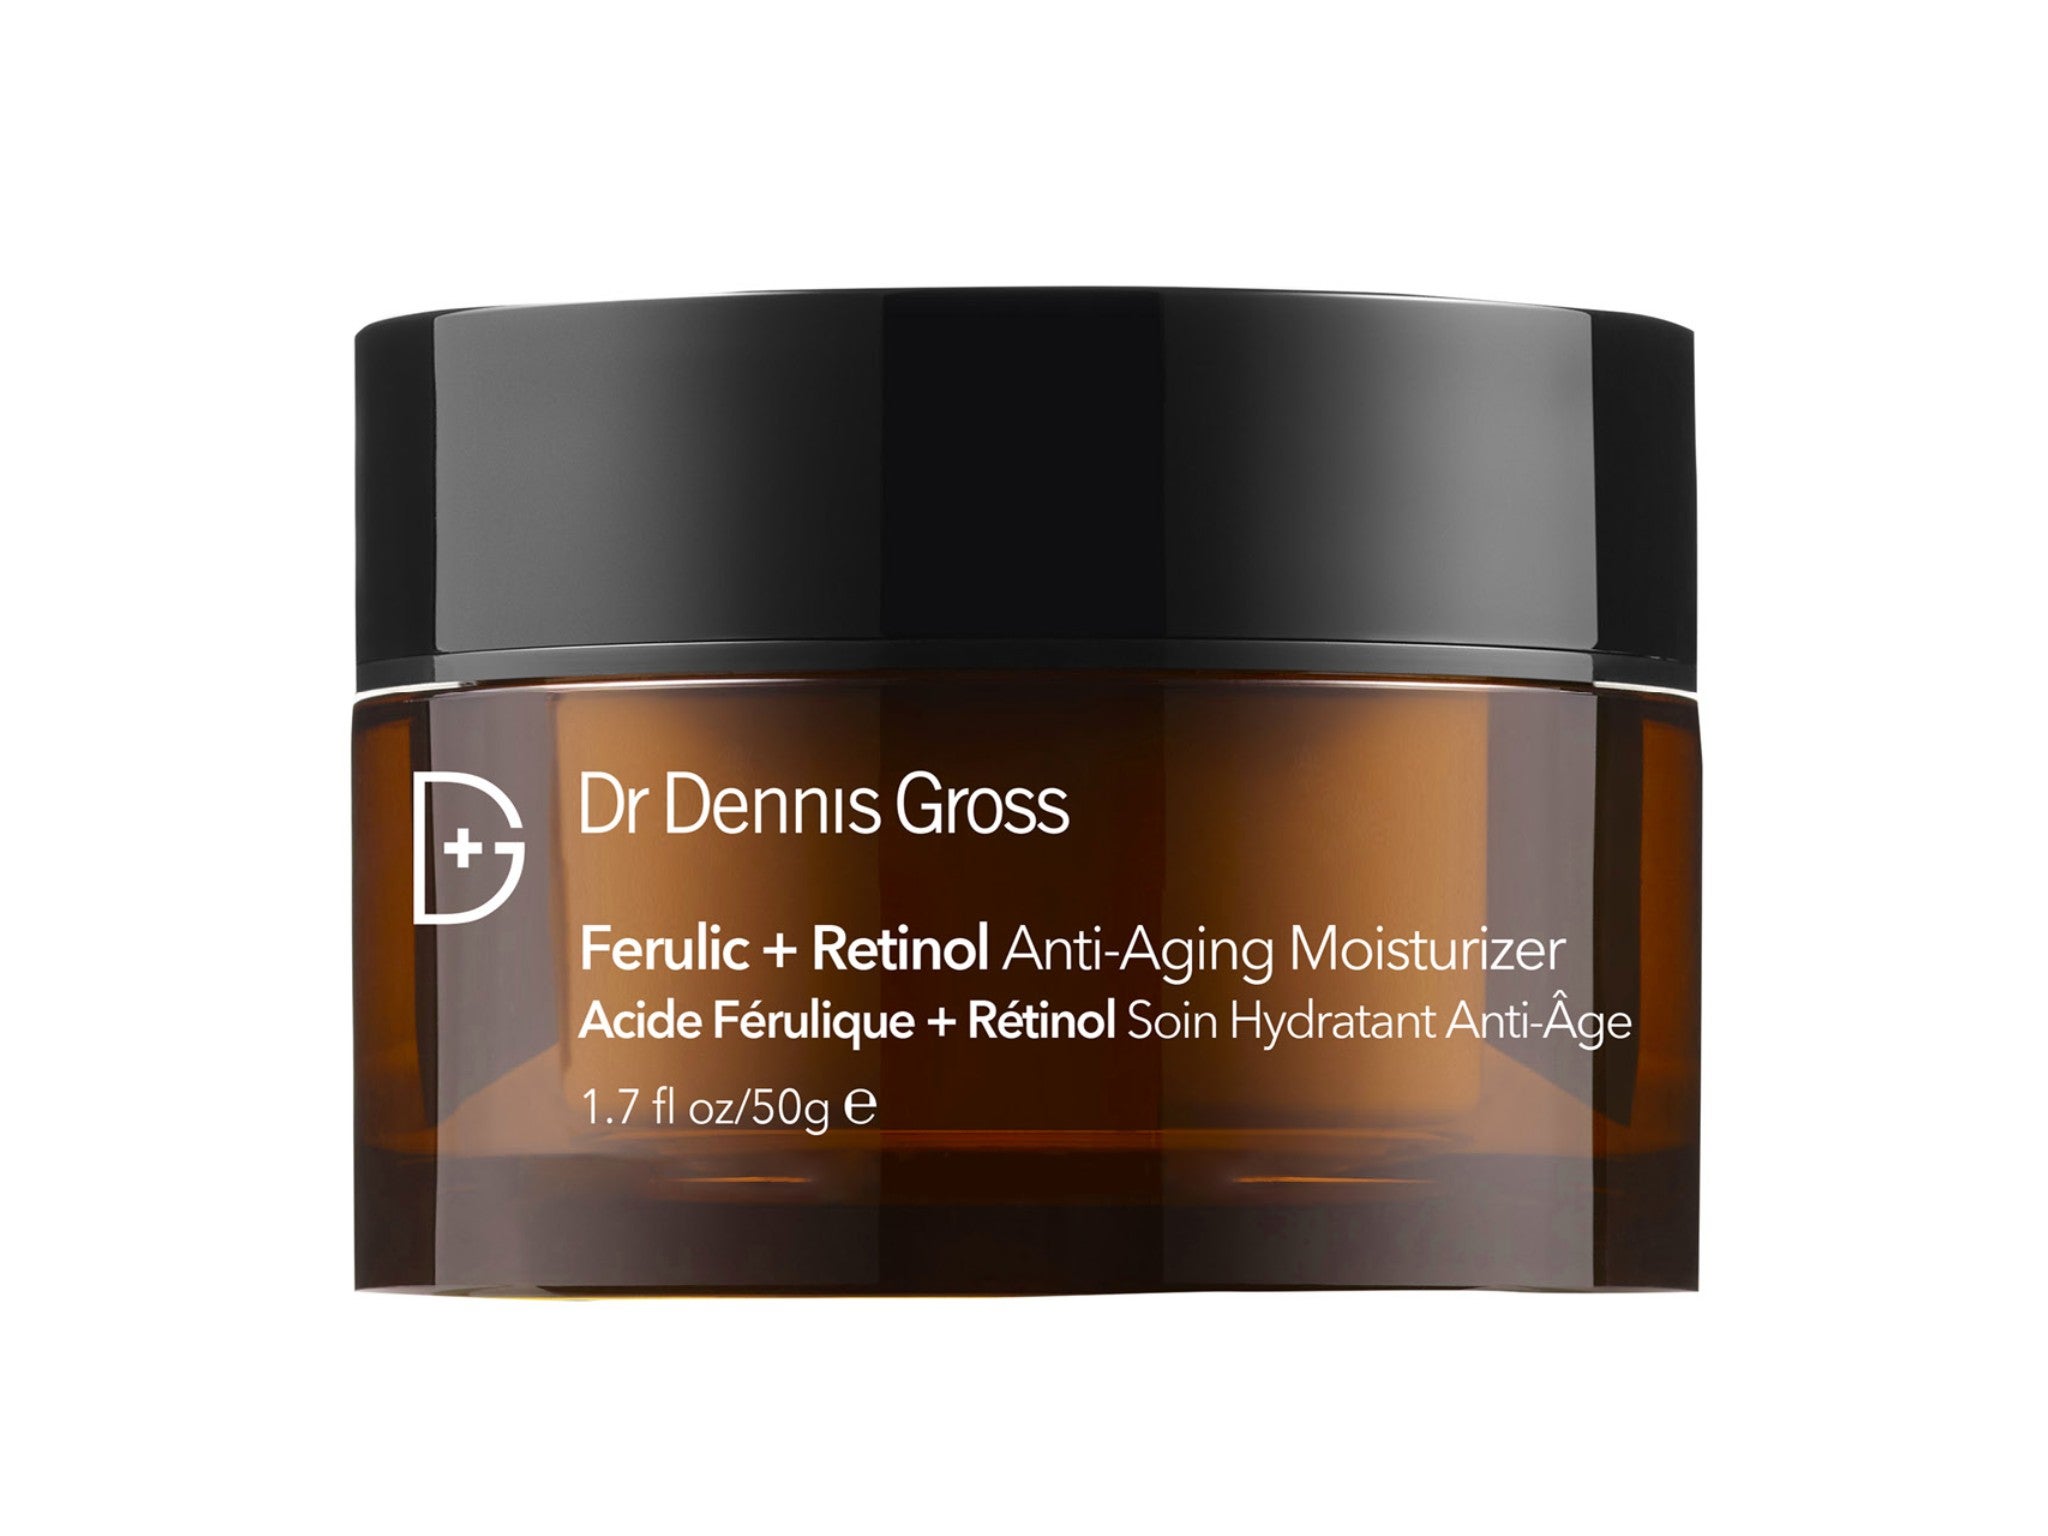 Dr Dennis Gross ferulic + retinol anti-aging moisturizer indybest.jpg